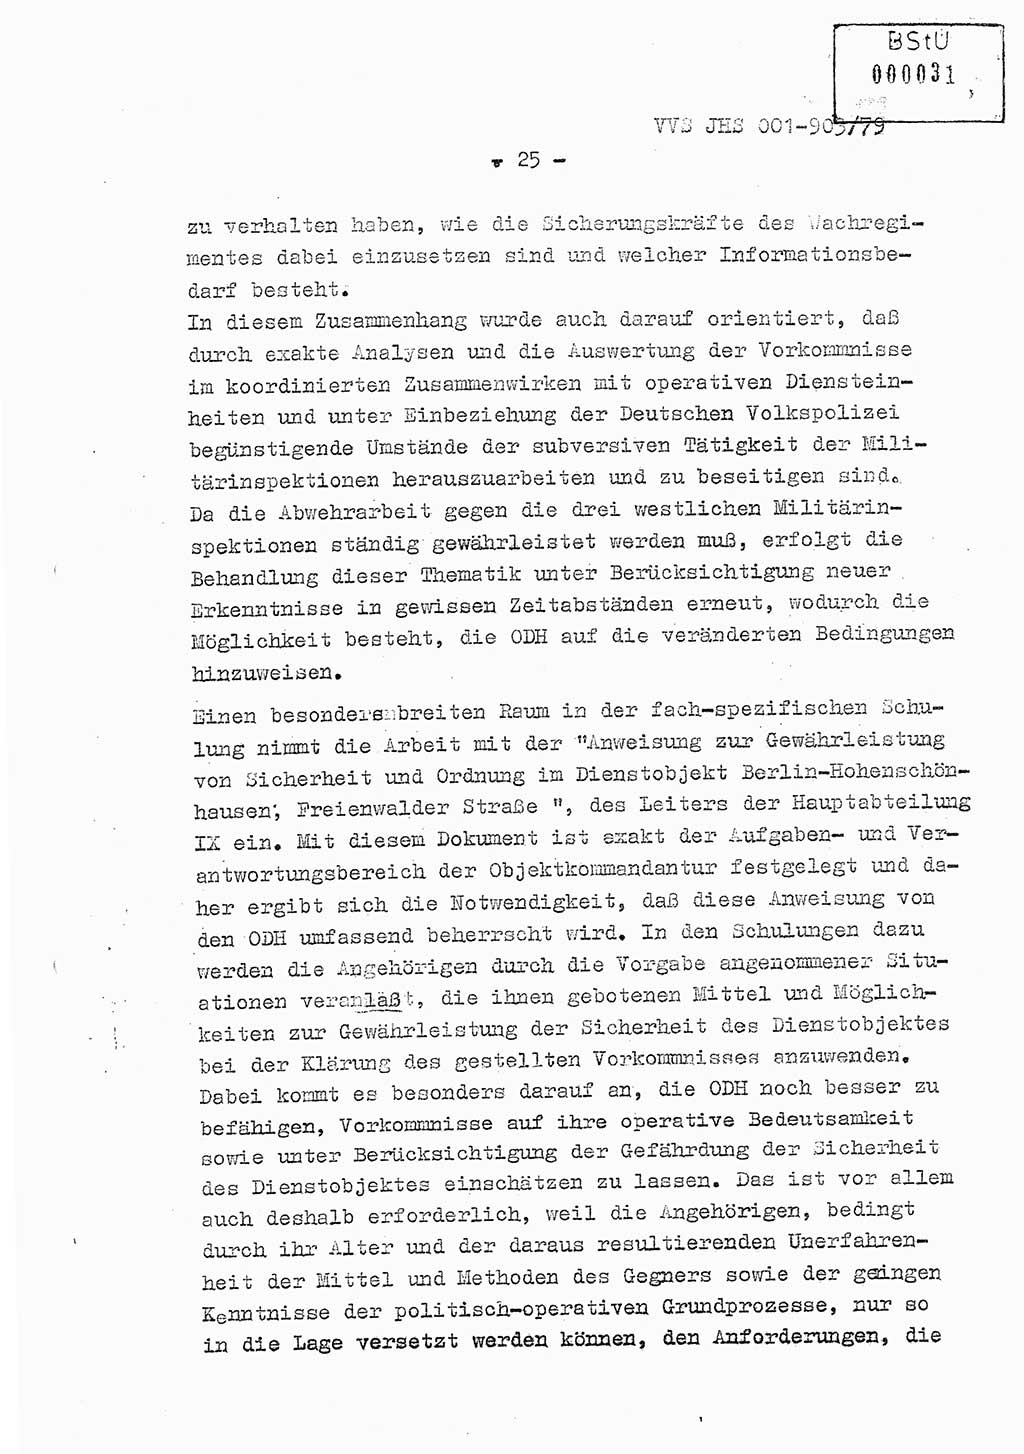 Fachschulabschlußarbeit Oberleutnant Jochen Pfeffer (HA Ⅸ/AGL), Ministerium für Staatssicherheit (MfS) [Deutsche Demokratische Republik (DDR)], Juristische Hochschule (JHS), Vertrauliche Verschlußsache (VVS) 001-903/79, Potsdam 1979, Seite 25 (FS-Abschl.-Arb. MfS DDR JHS VVS 001-903/79 1979, S. 25)